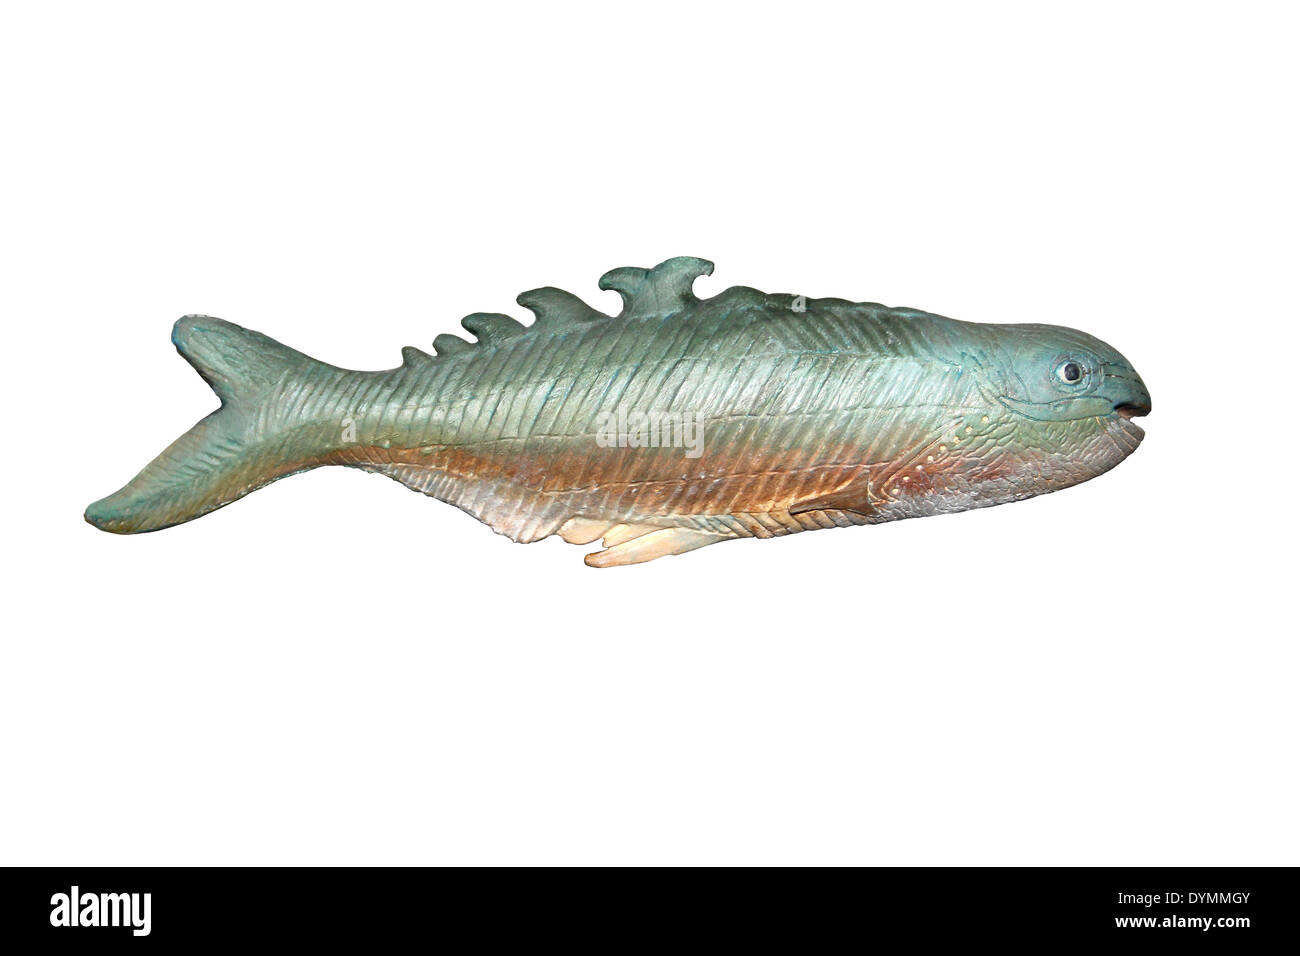 Modelo de peces Jawless Birkenia elegans - un extinto anaspid pescado desde finales del Silúrico Devoniano temprano de Europa Foto de stock